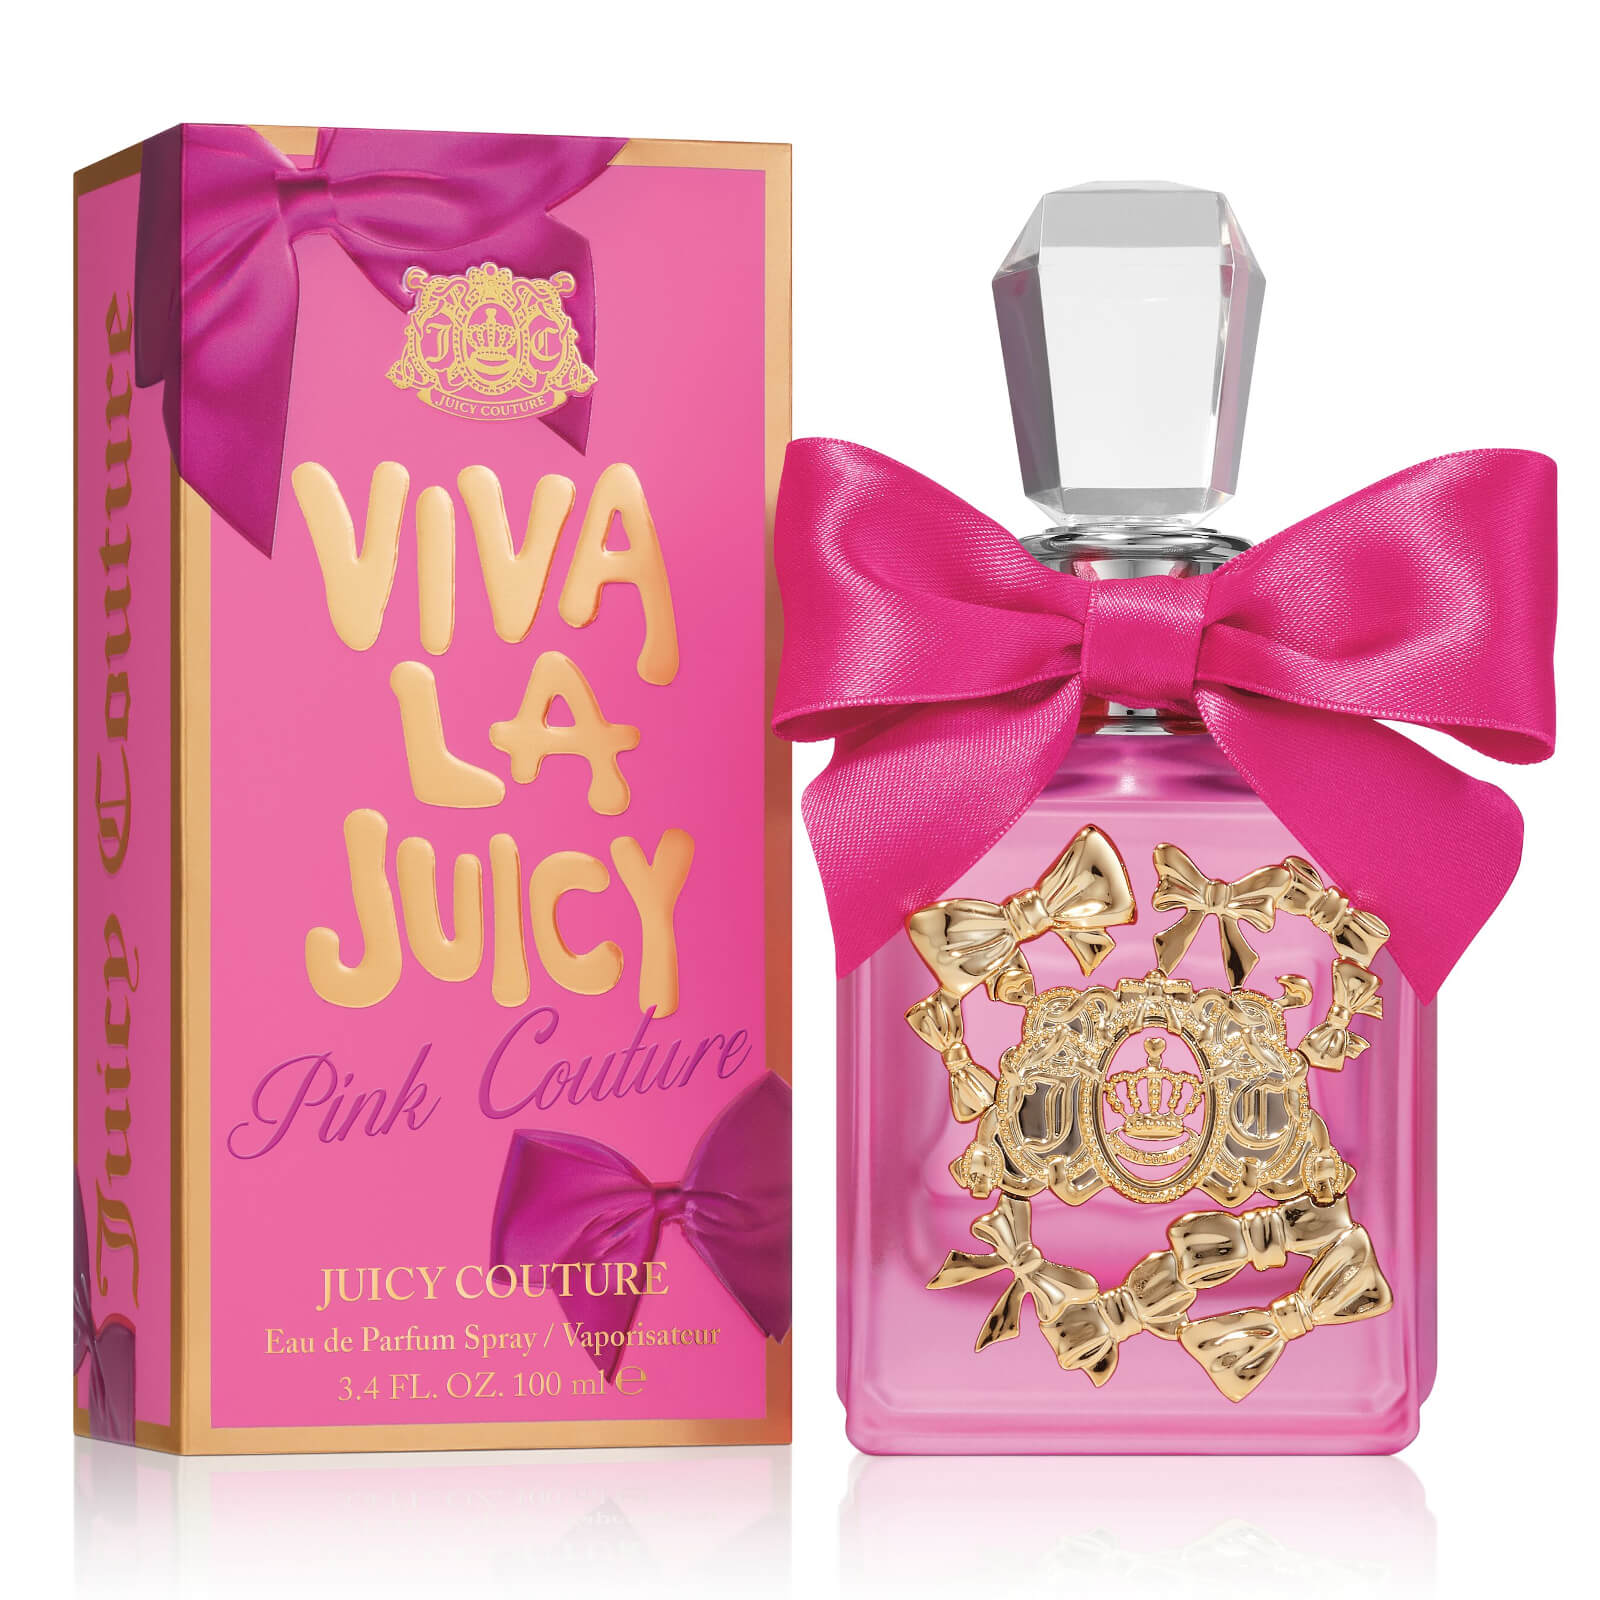 viva la juicy perfume big bottle